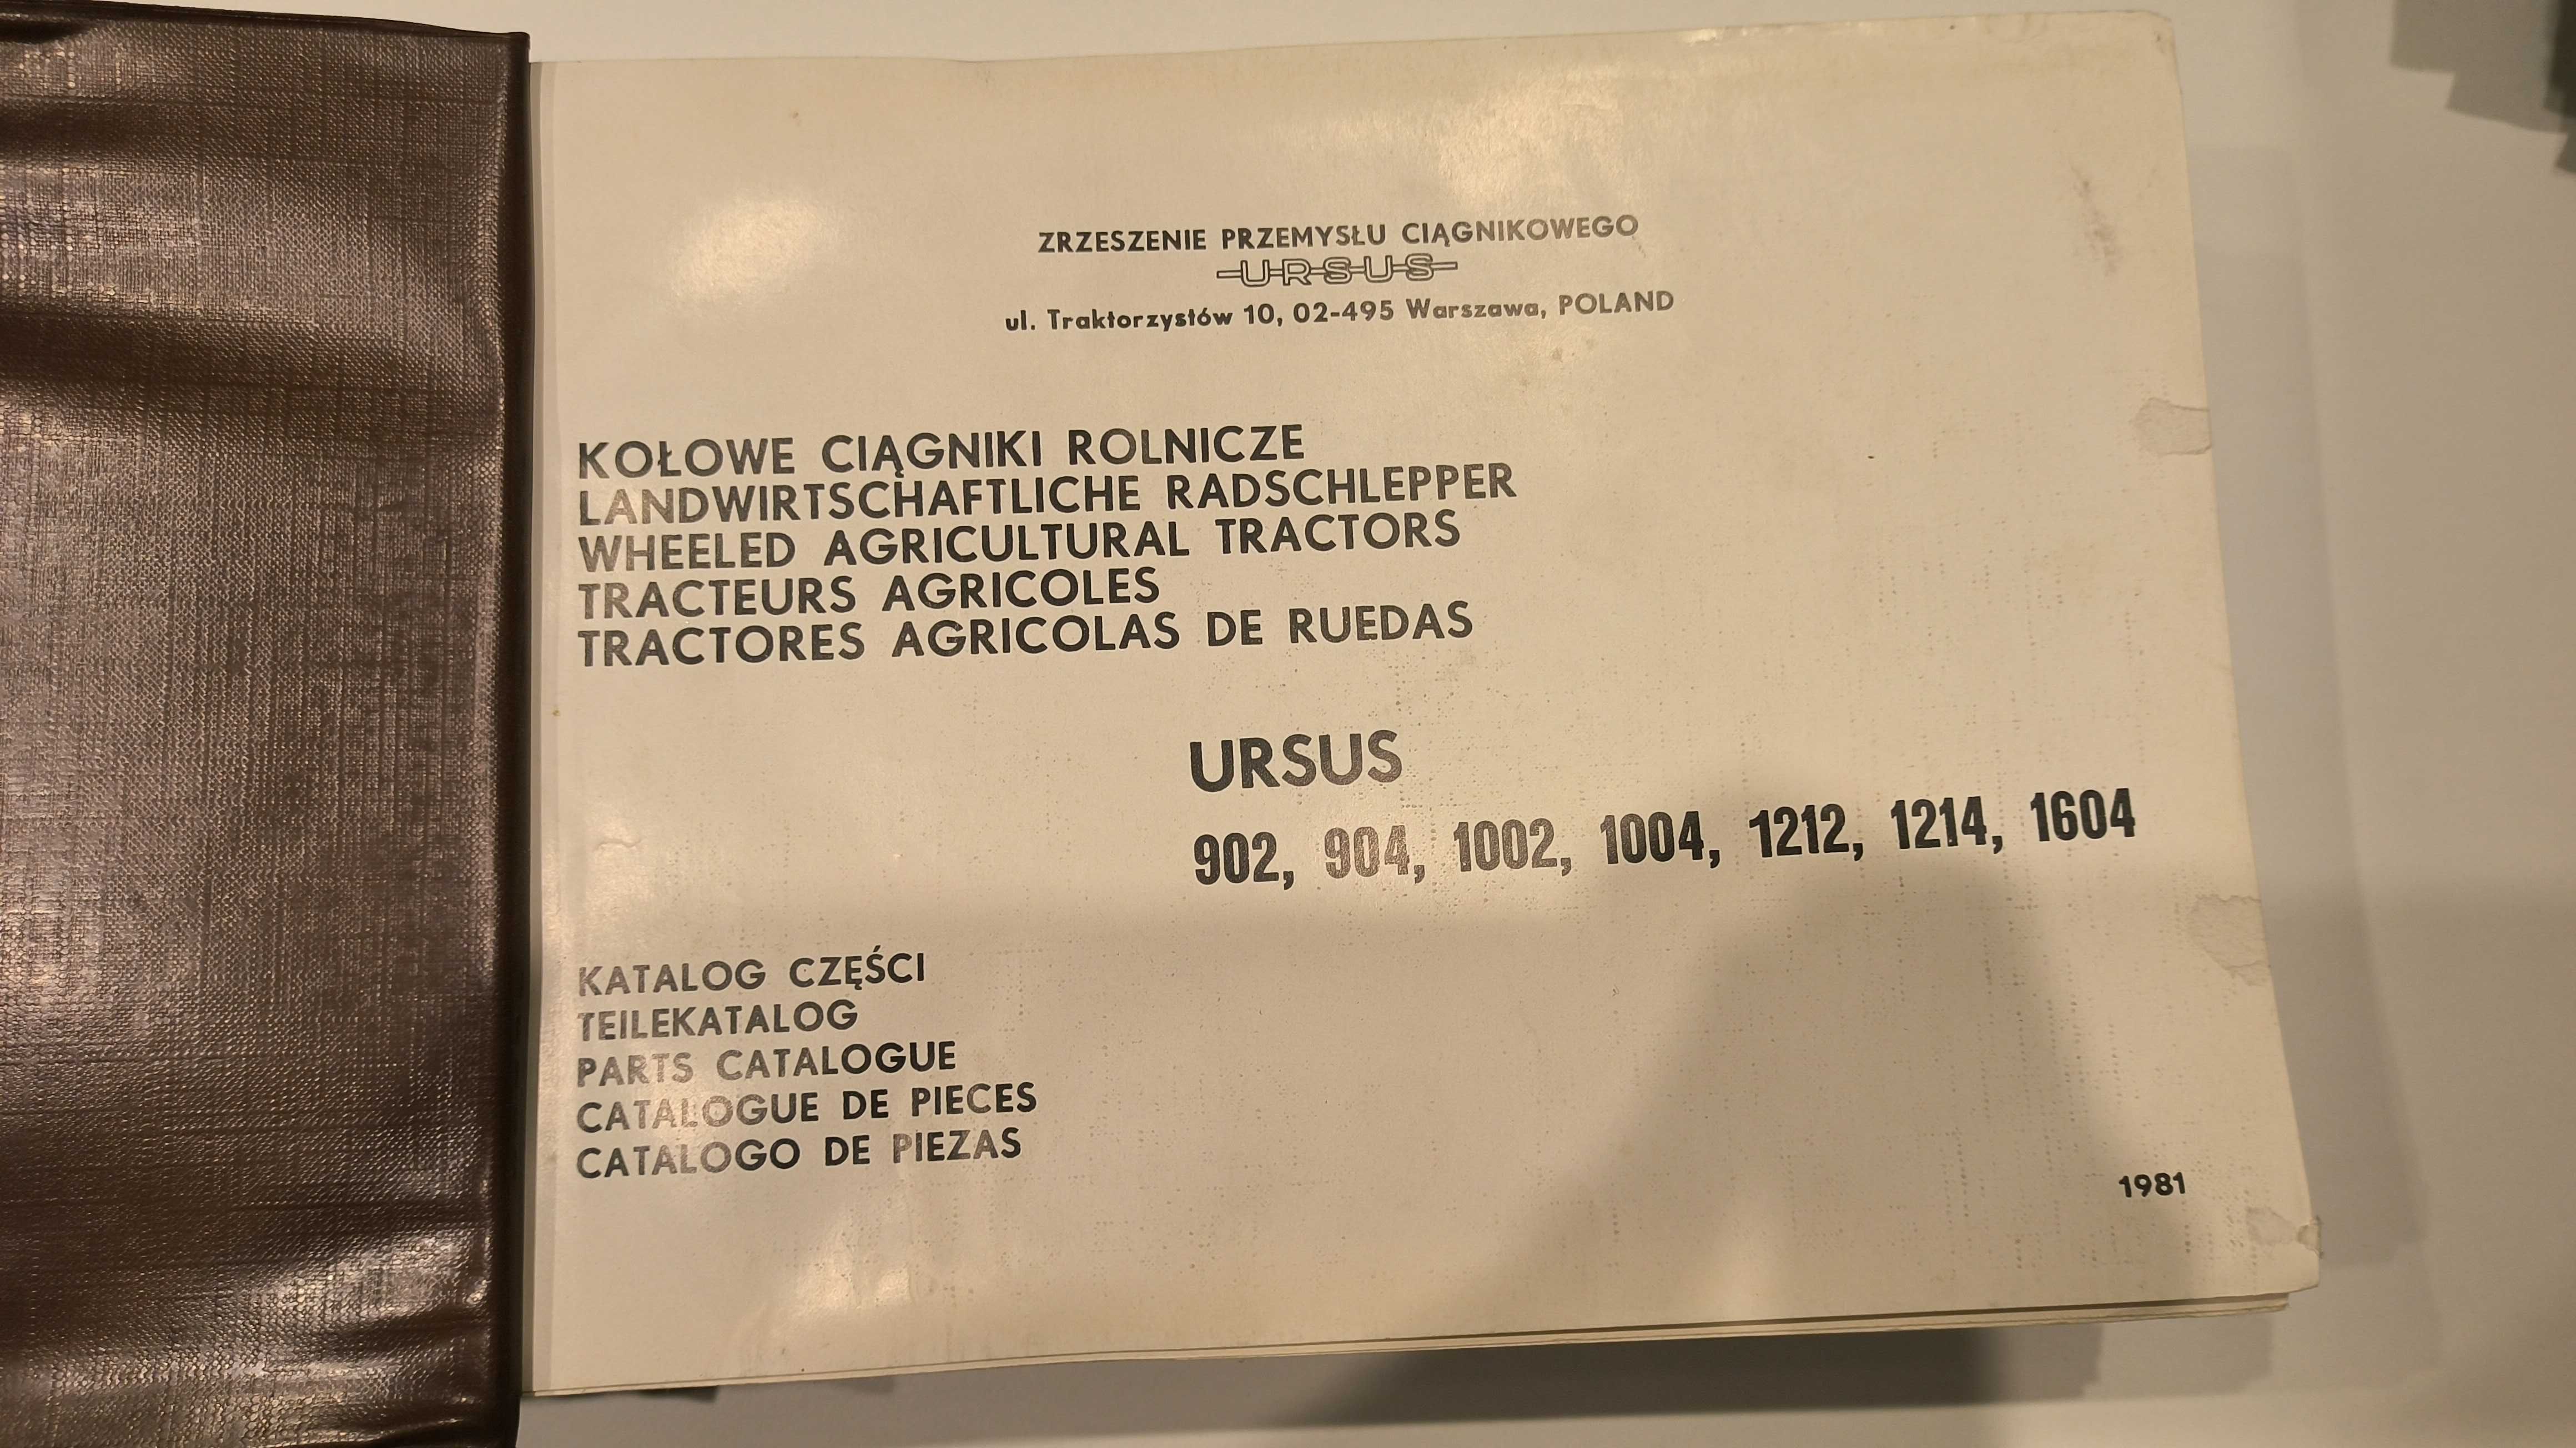 Katalog części URSUS 902, 904, 1002, 1004, 1212,1214,1604